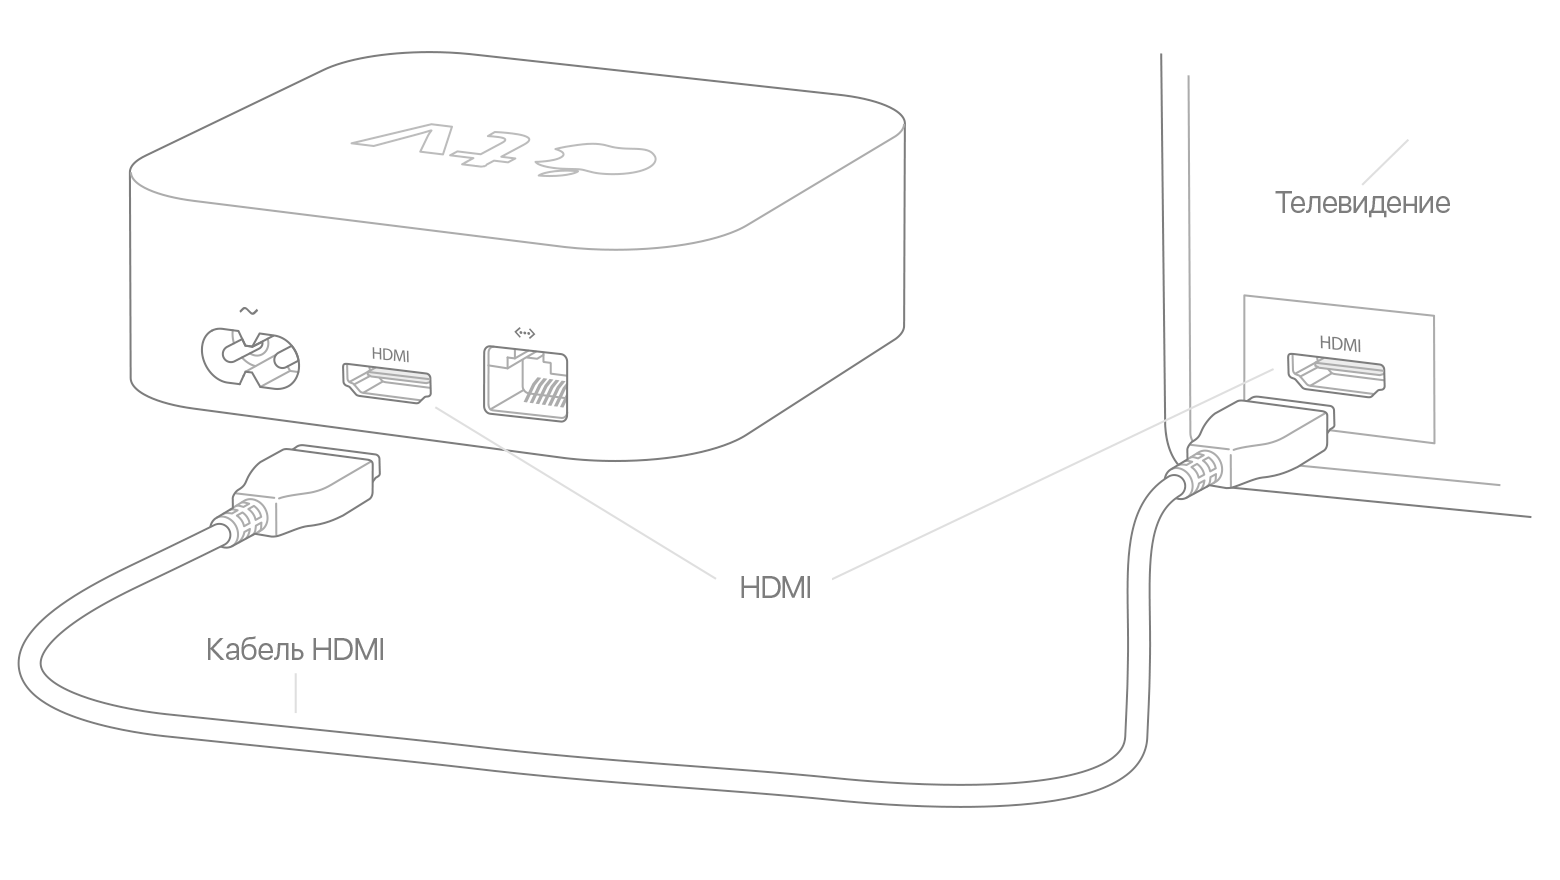 Якщо індикатор стану Apple TV світиться, але зображення або звук відсутній, переконайтеся, що кабель HDMI надійно приєднаний до Apple TV і до телевізора, ресивера або комутатора HDMI